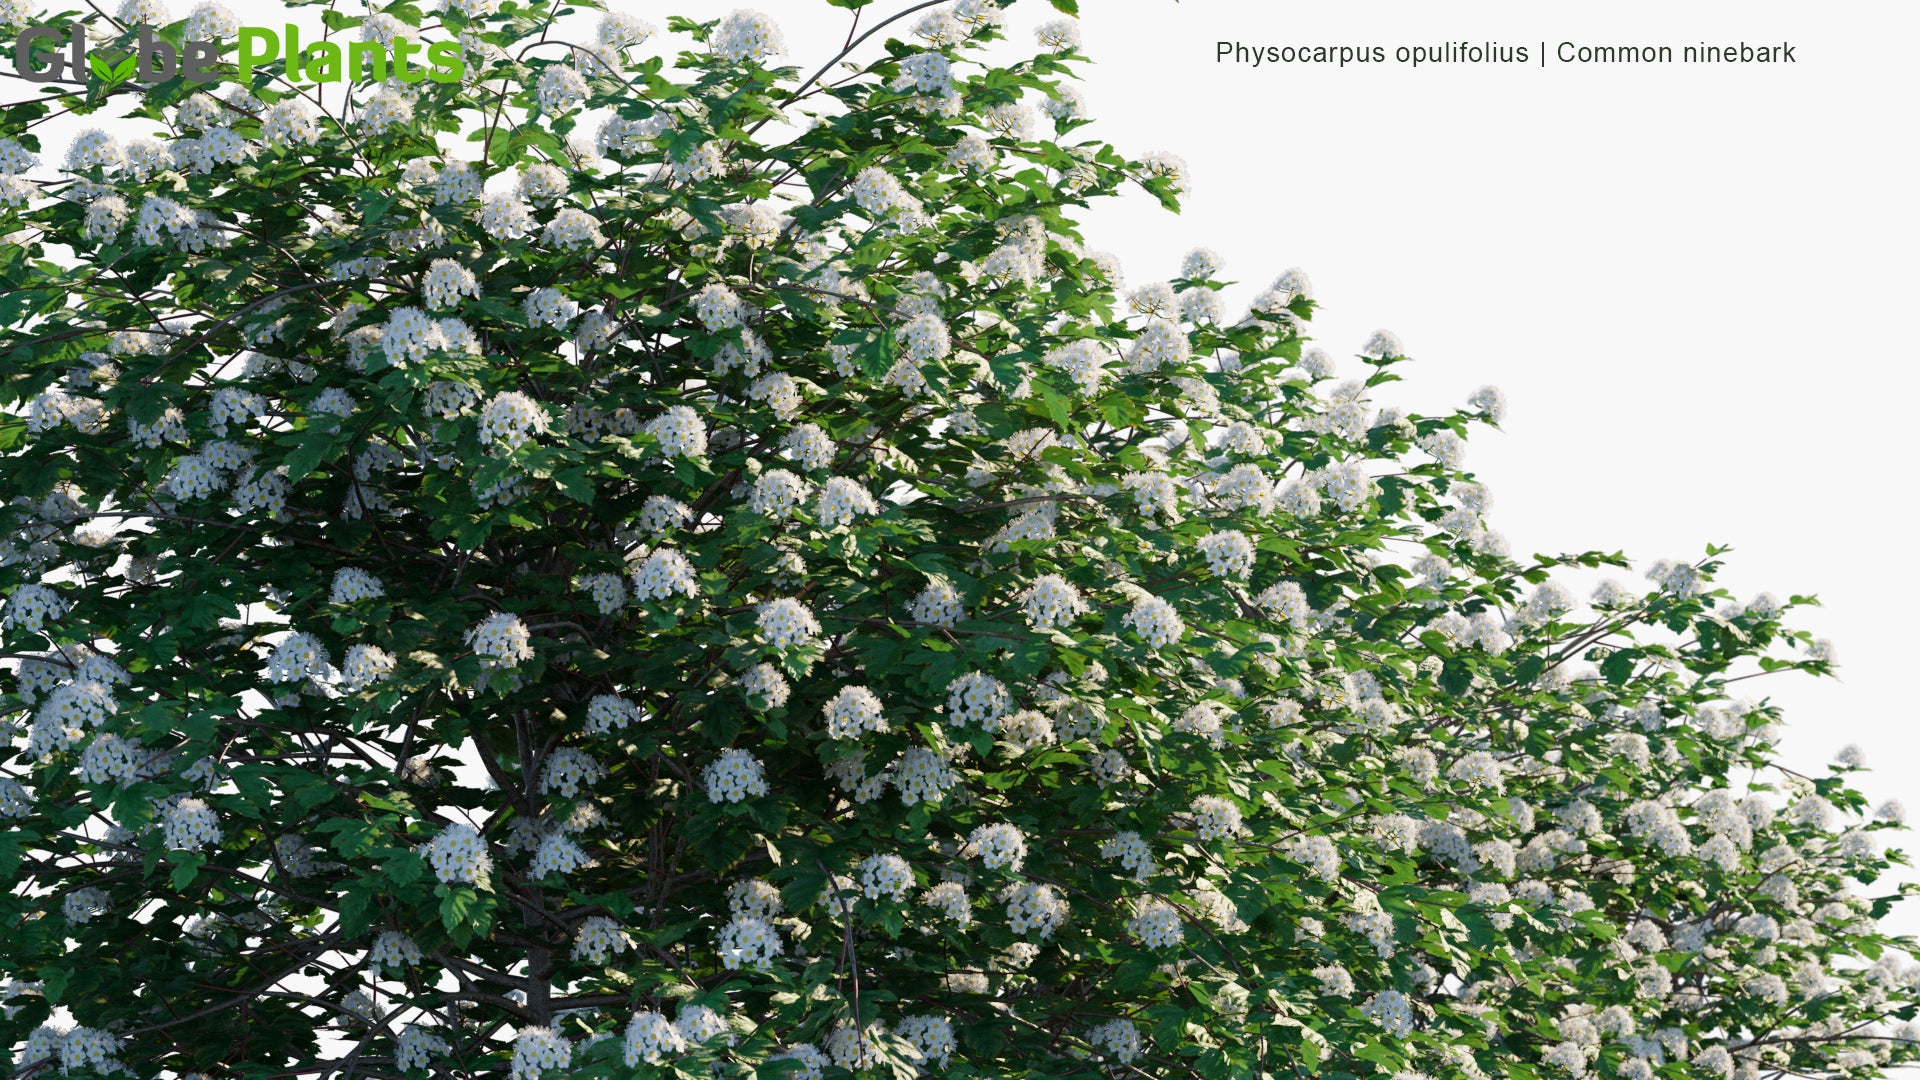 Physocarpus Opulifolius - Common Ninebark, Eastern Ninebark, Atlantic Ninebark, Ninebark